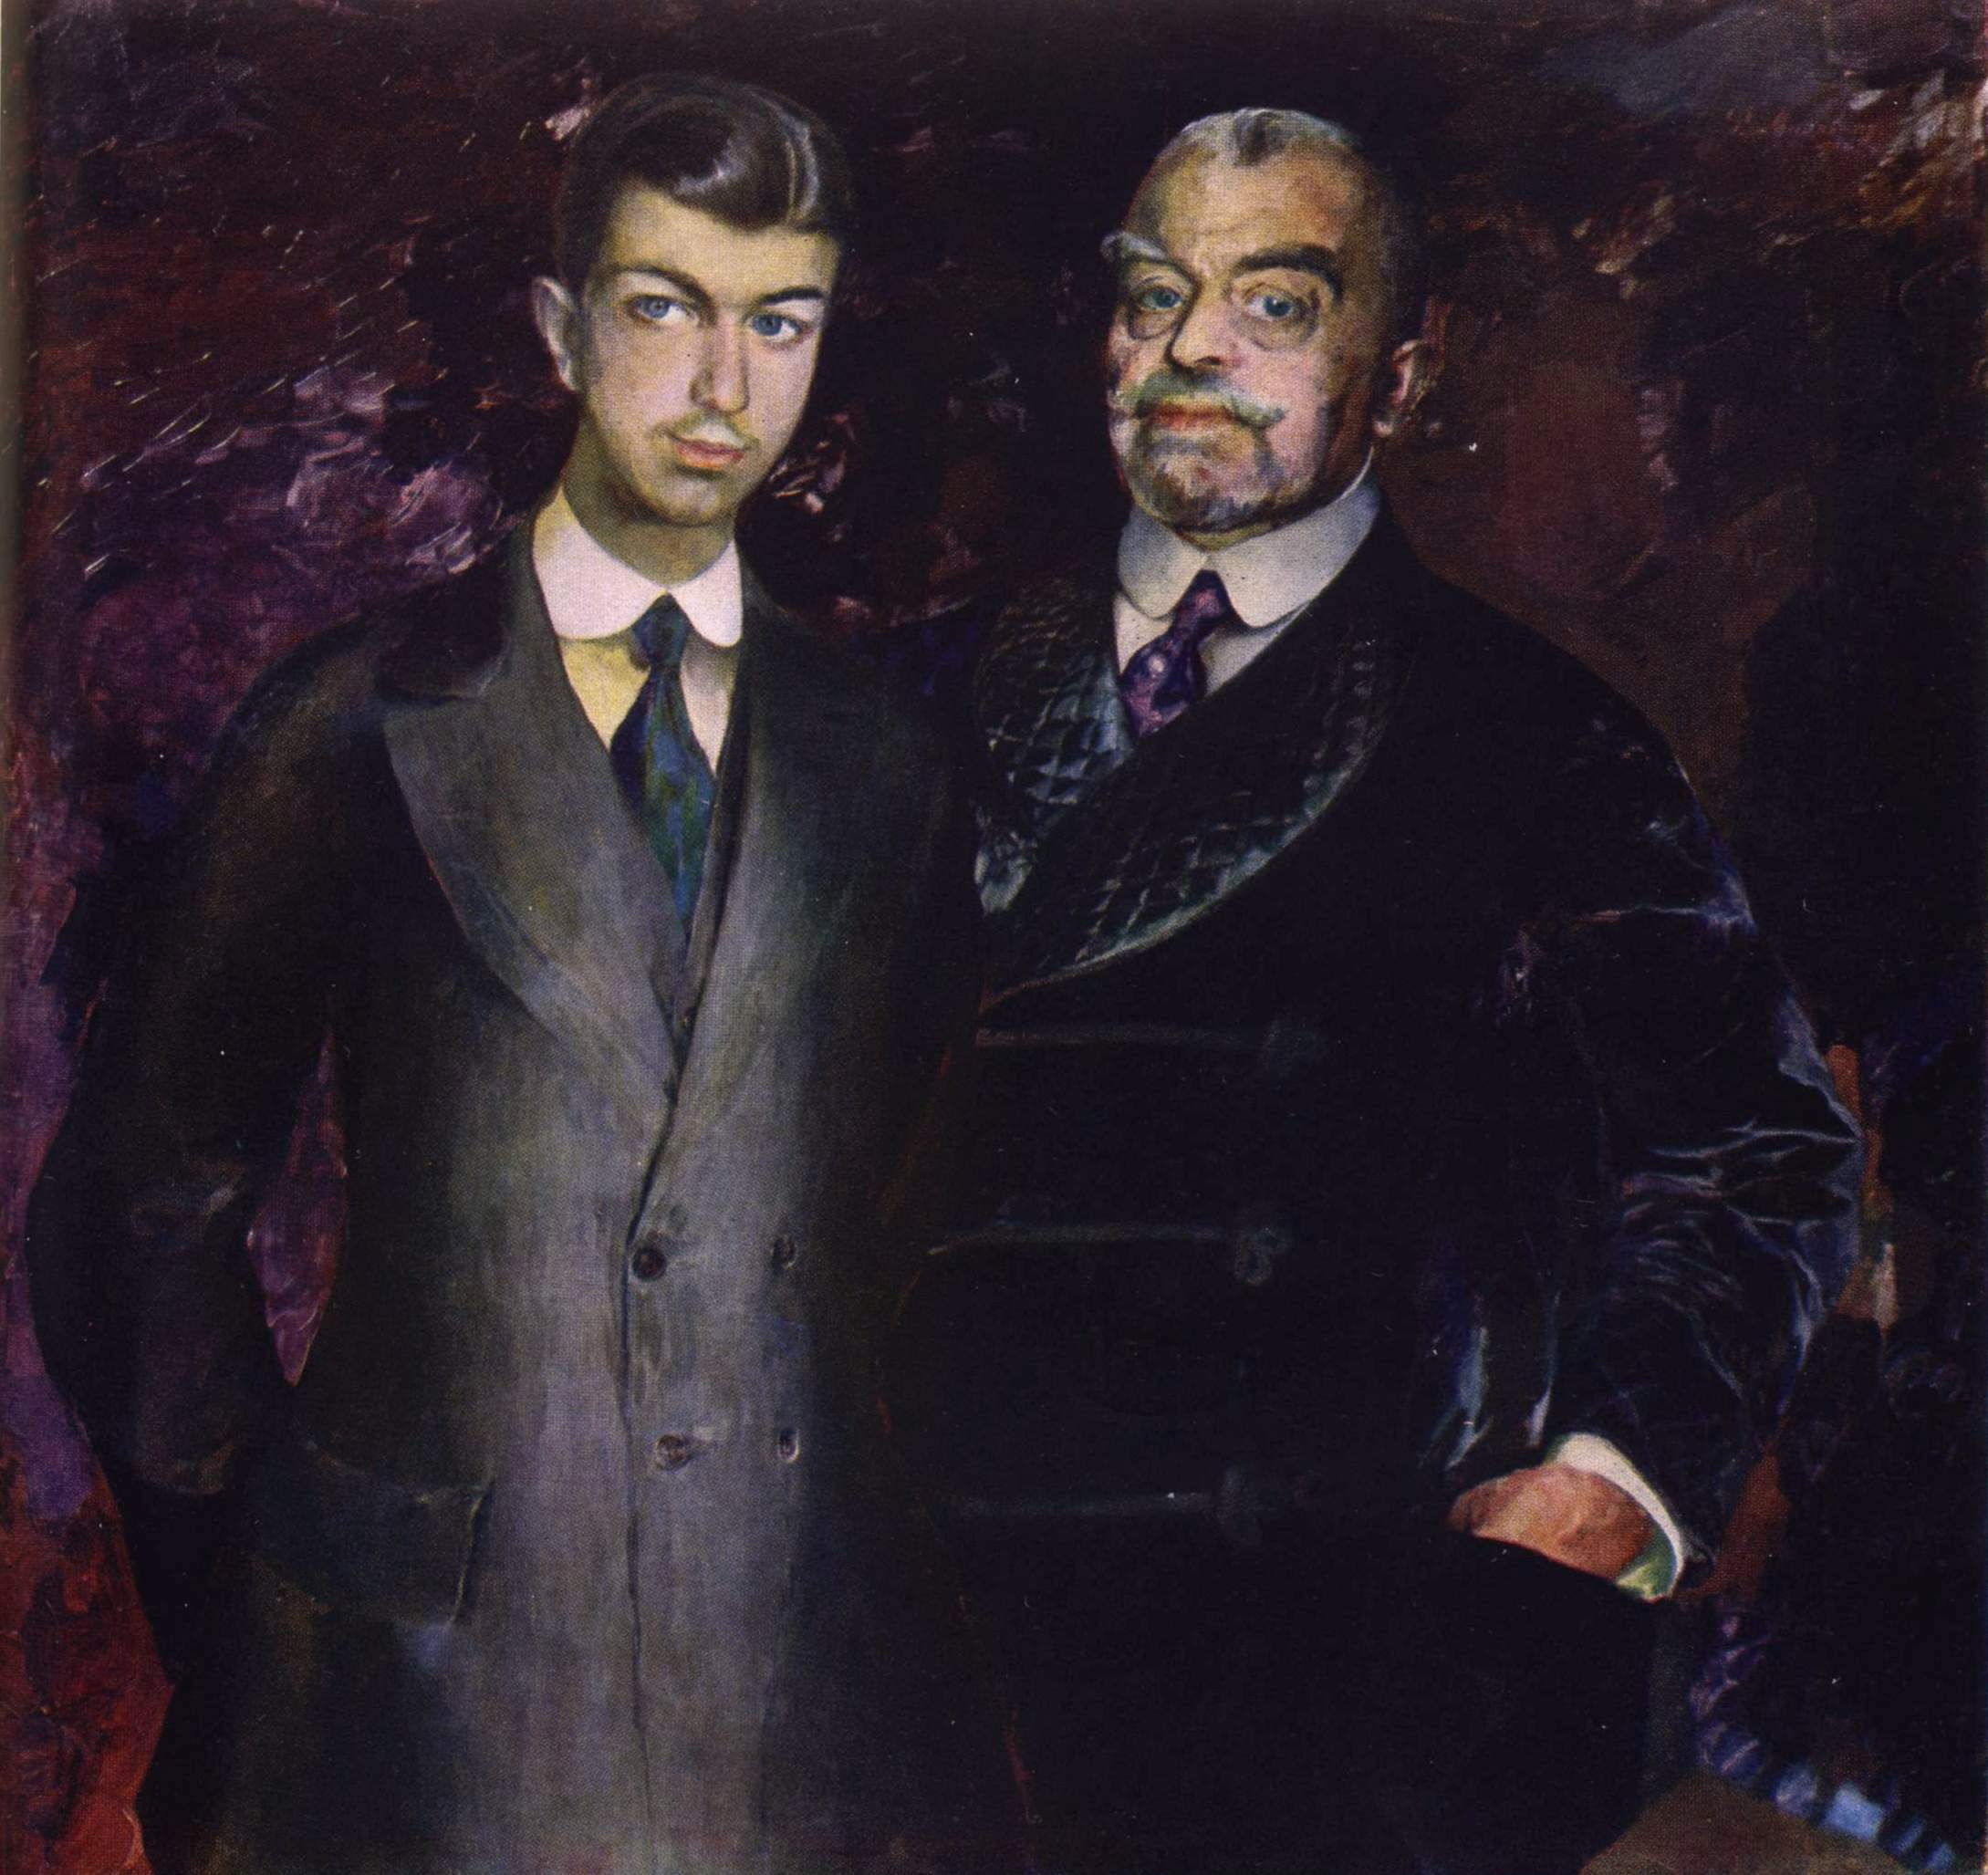 Малявин. Портрет П.И. Харитоненко с сыном. 1911